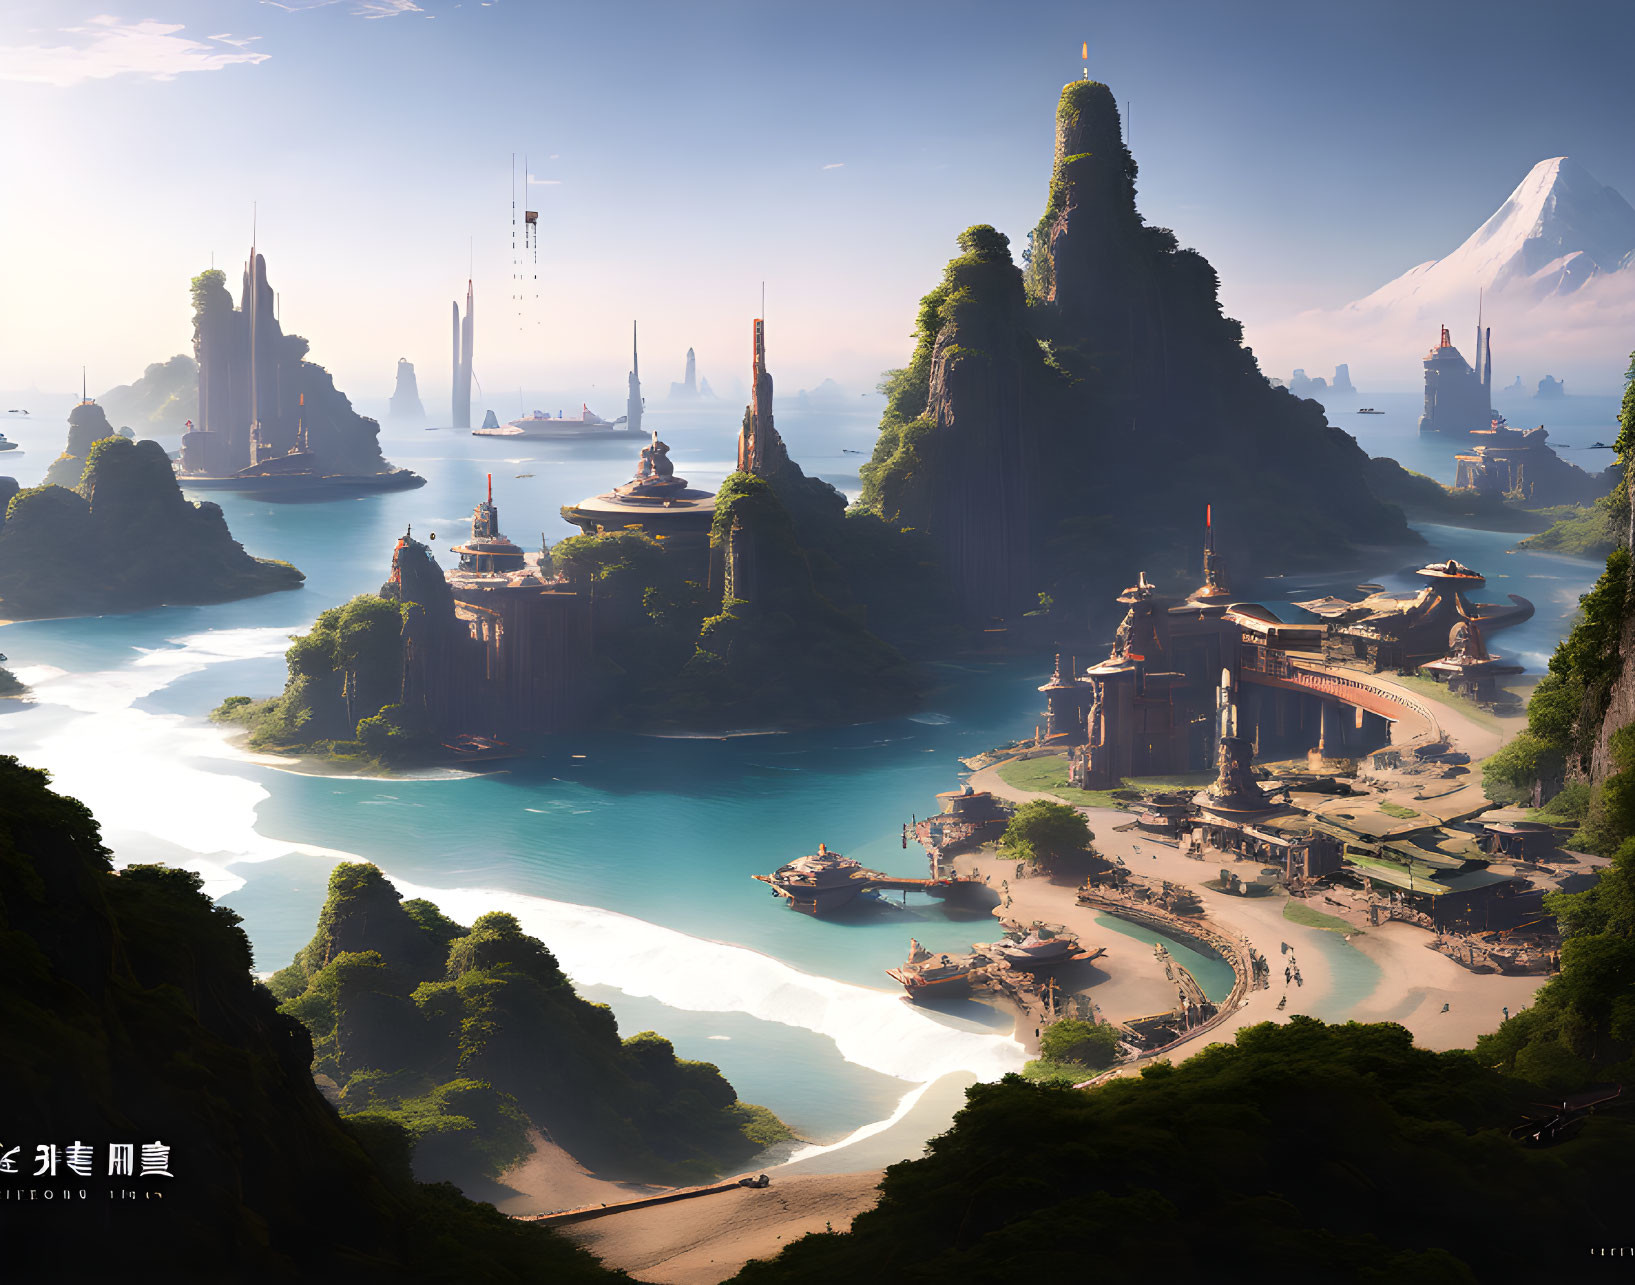 Archipelago Citadel in the ancient future